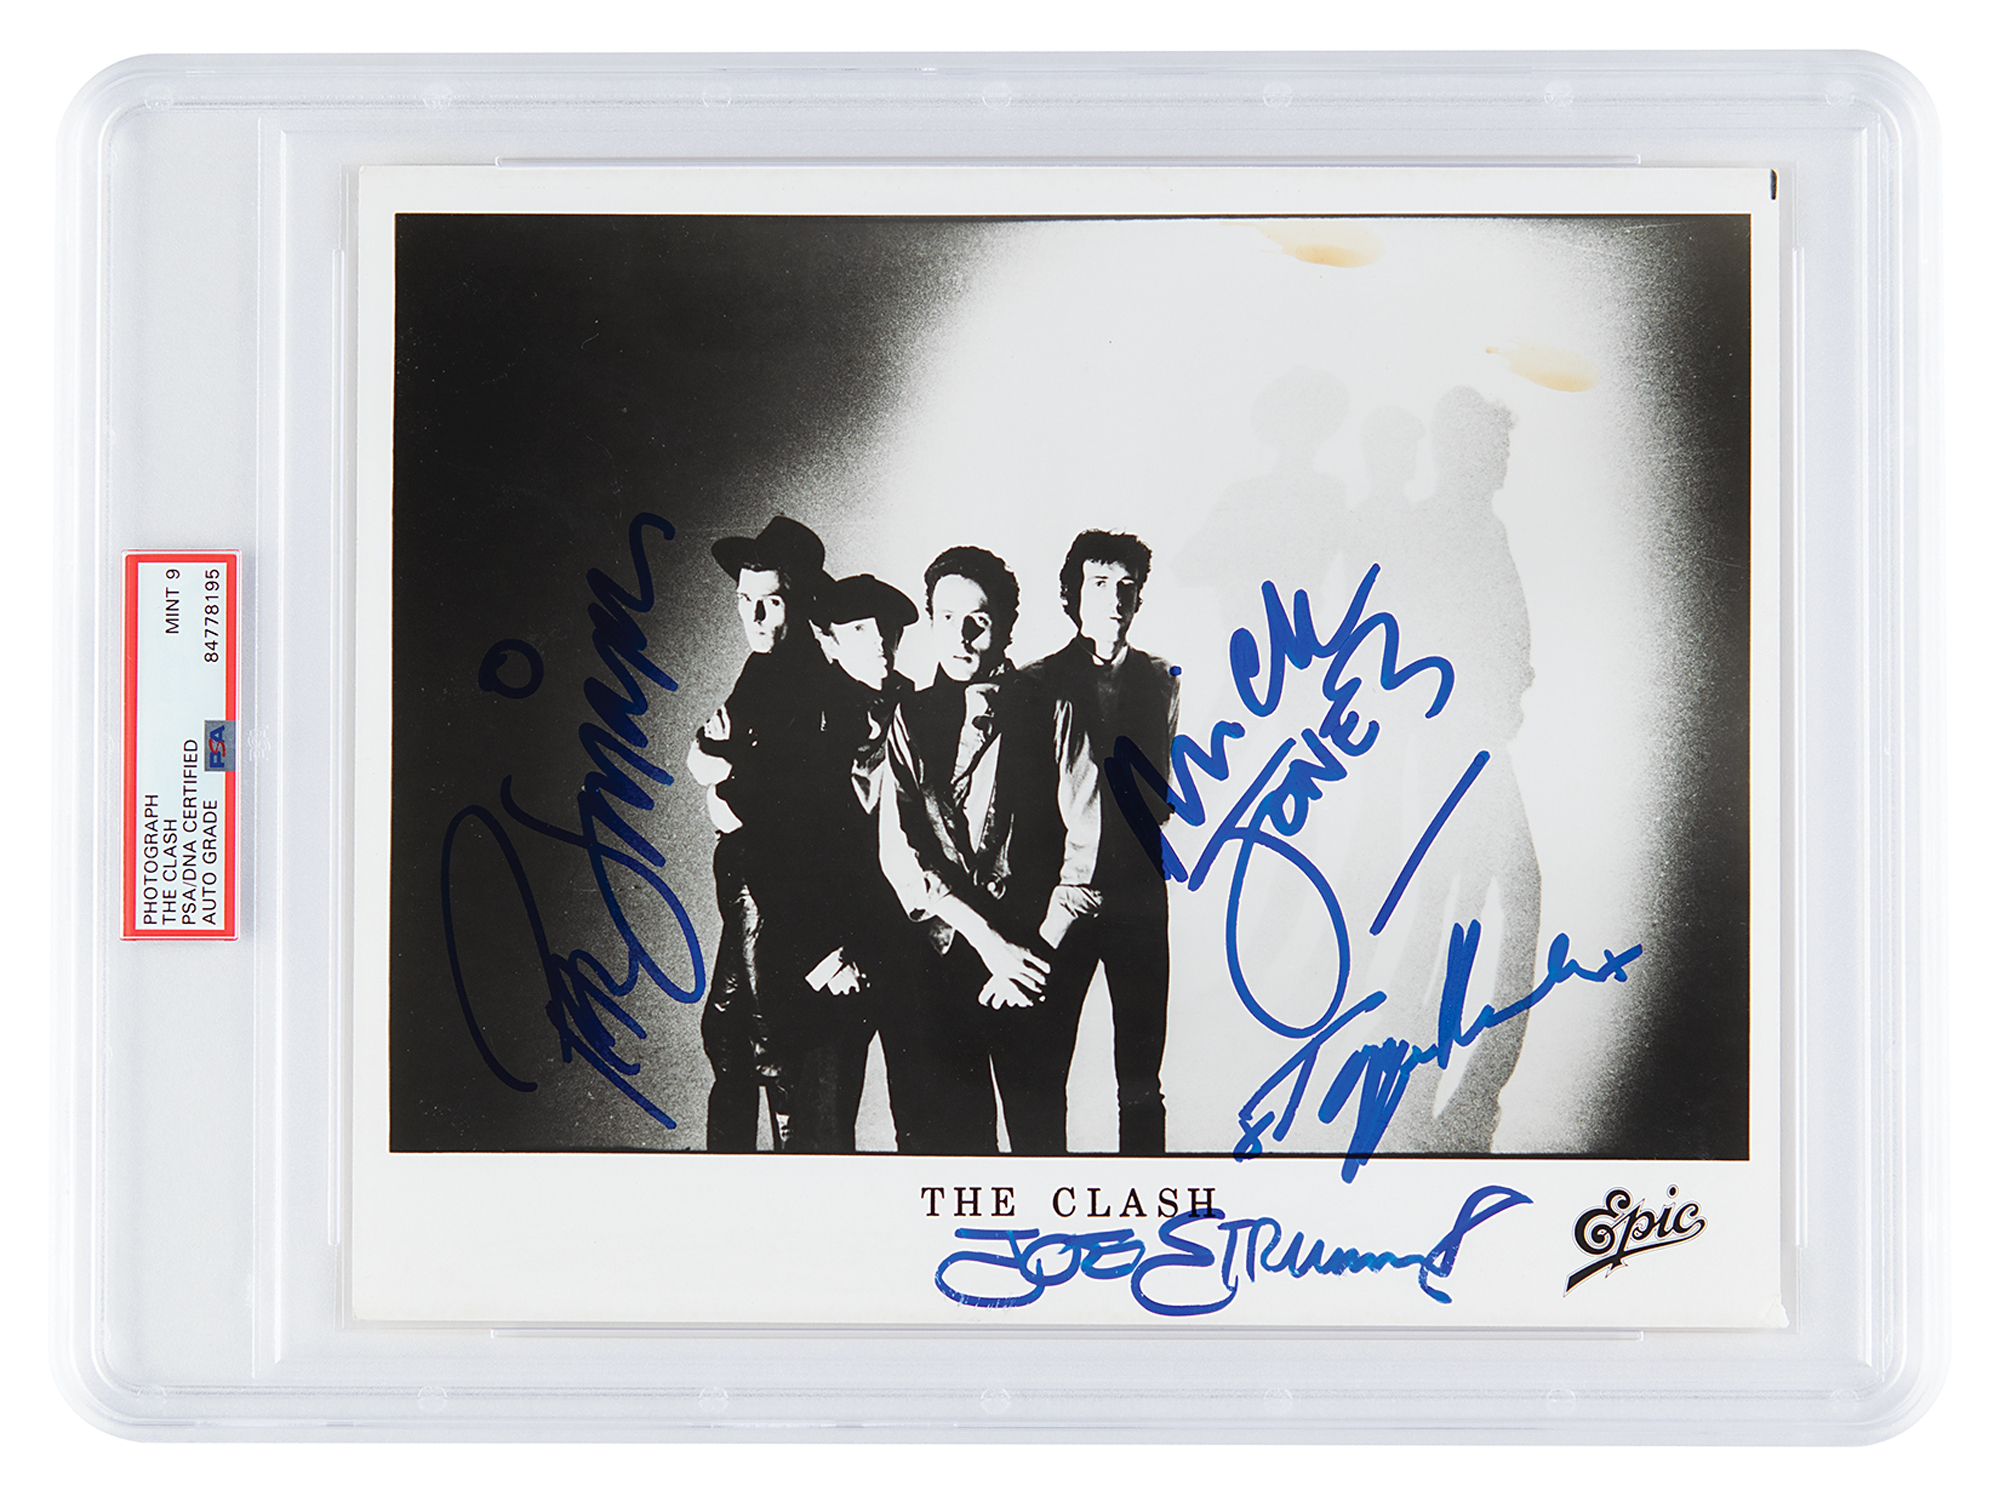 Lot #7275 The Clash Signed Photograph - PSA MINT 9